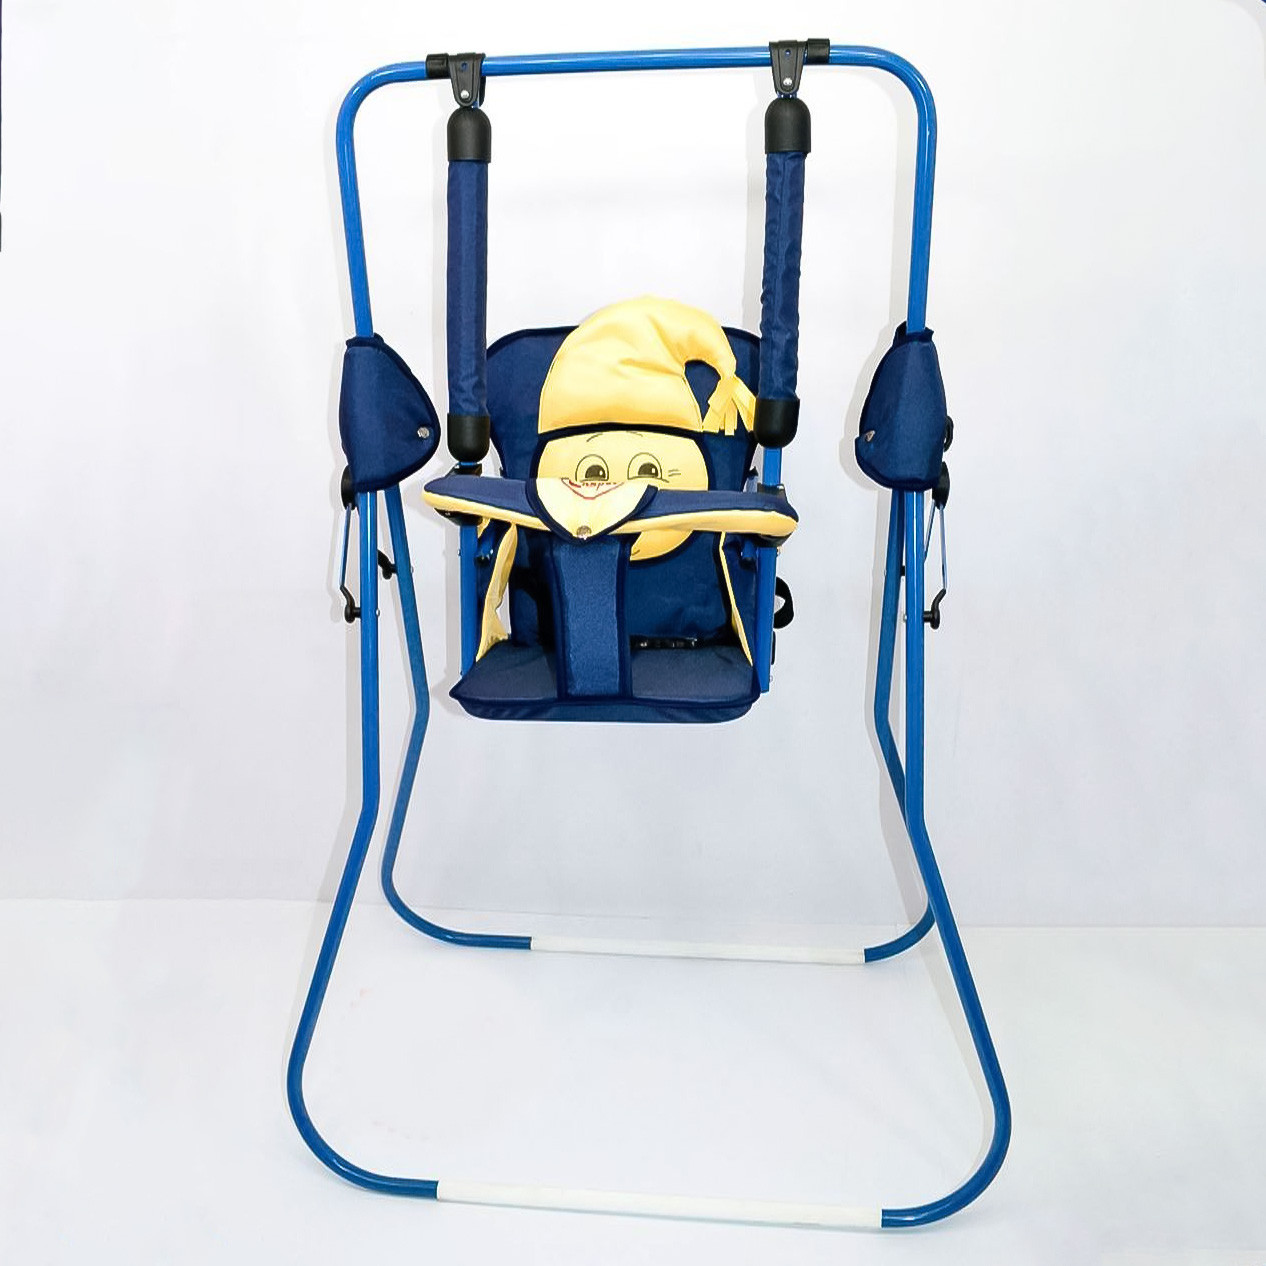 Гойдалки підлогові для дитини компактні з регульованим нахилом спинки та бампером безпеки Алінка 24877